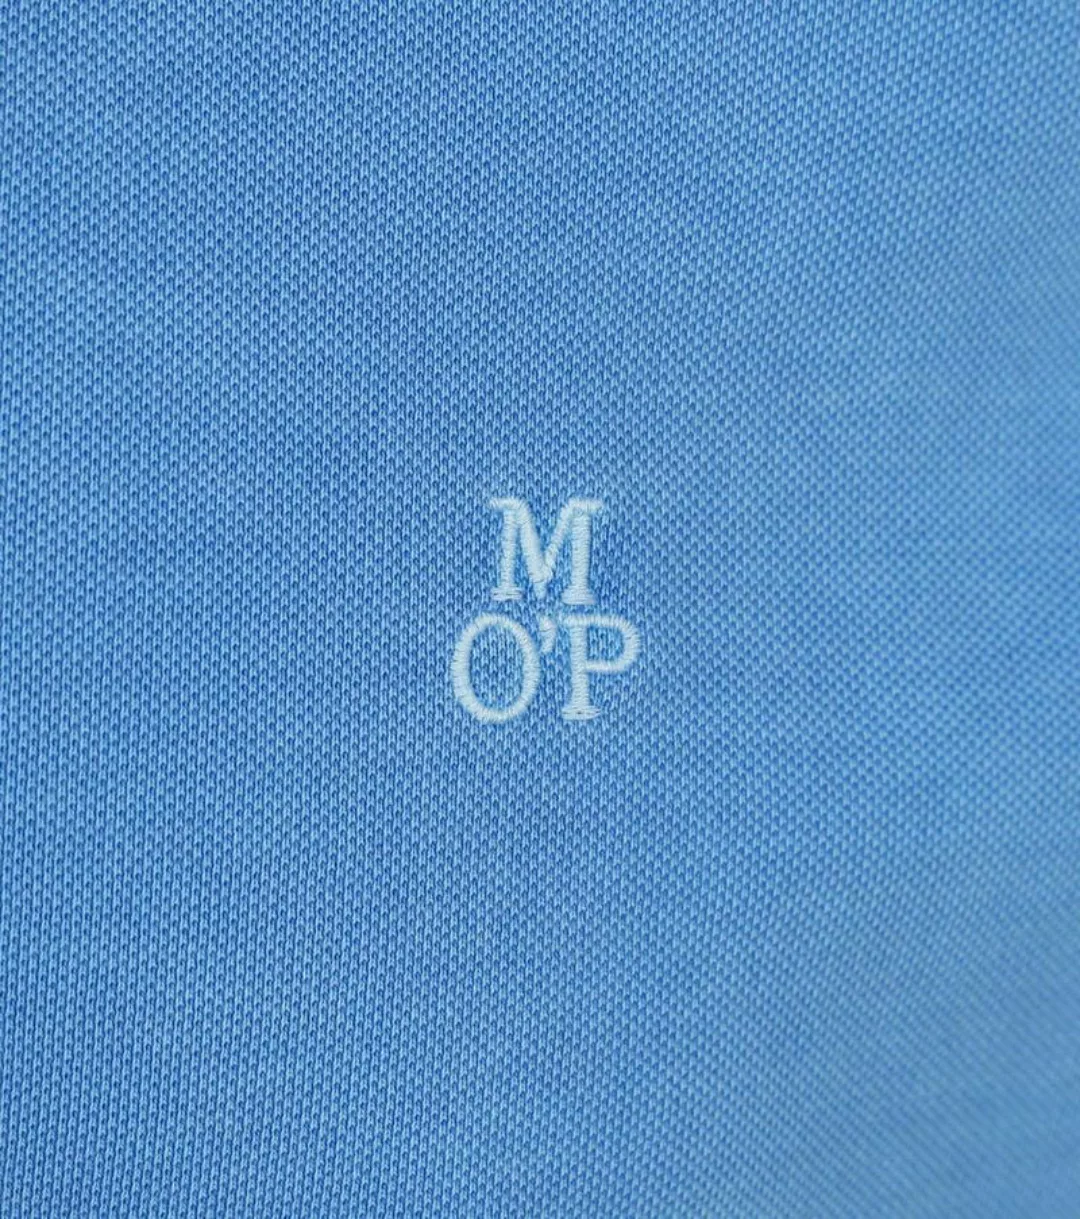 Marc O'Polo Poloshirt Faded Blau - Größe L günstig online kaufen